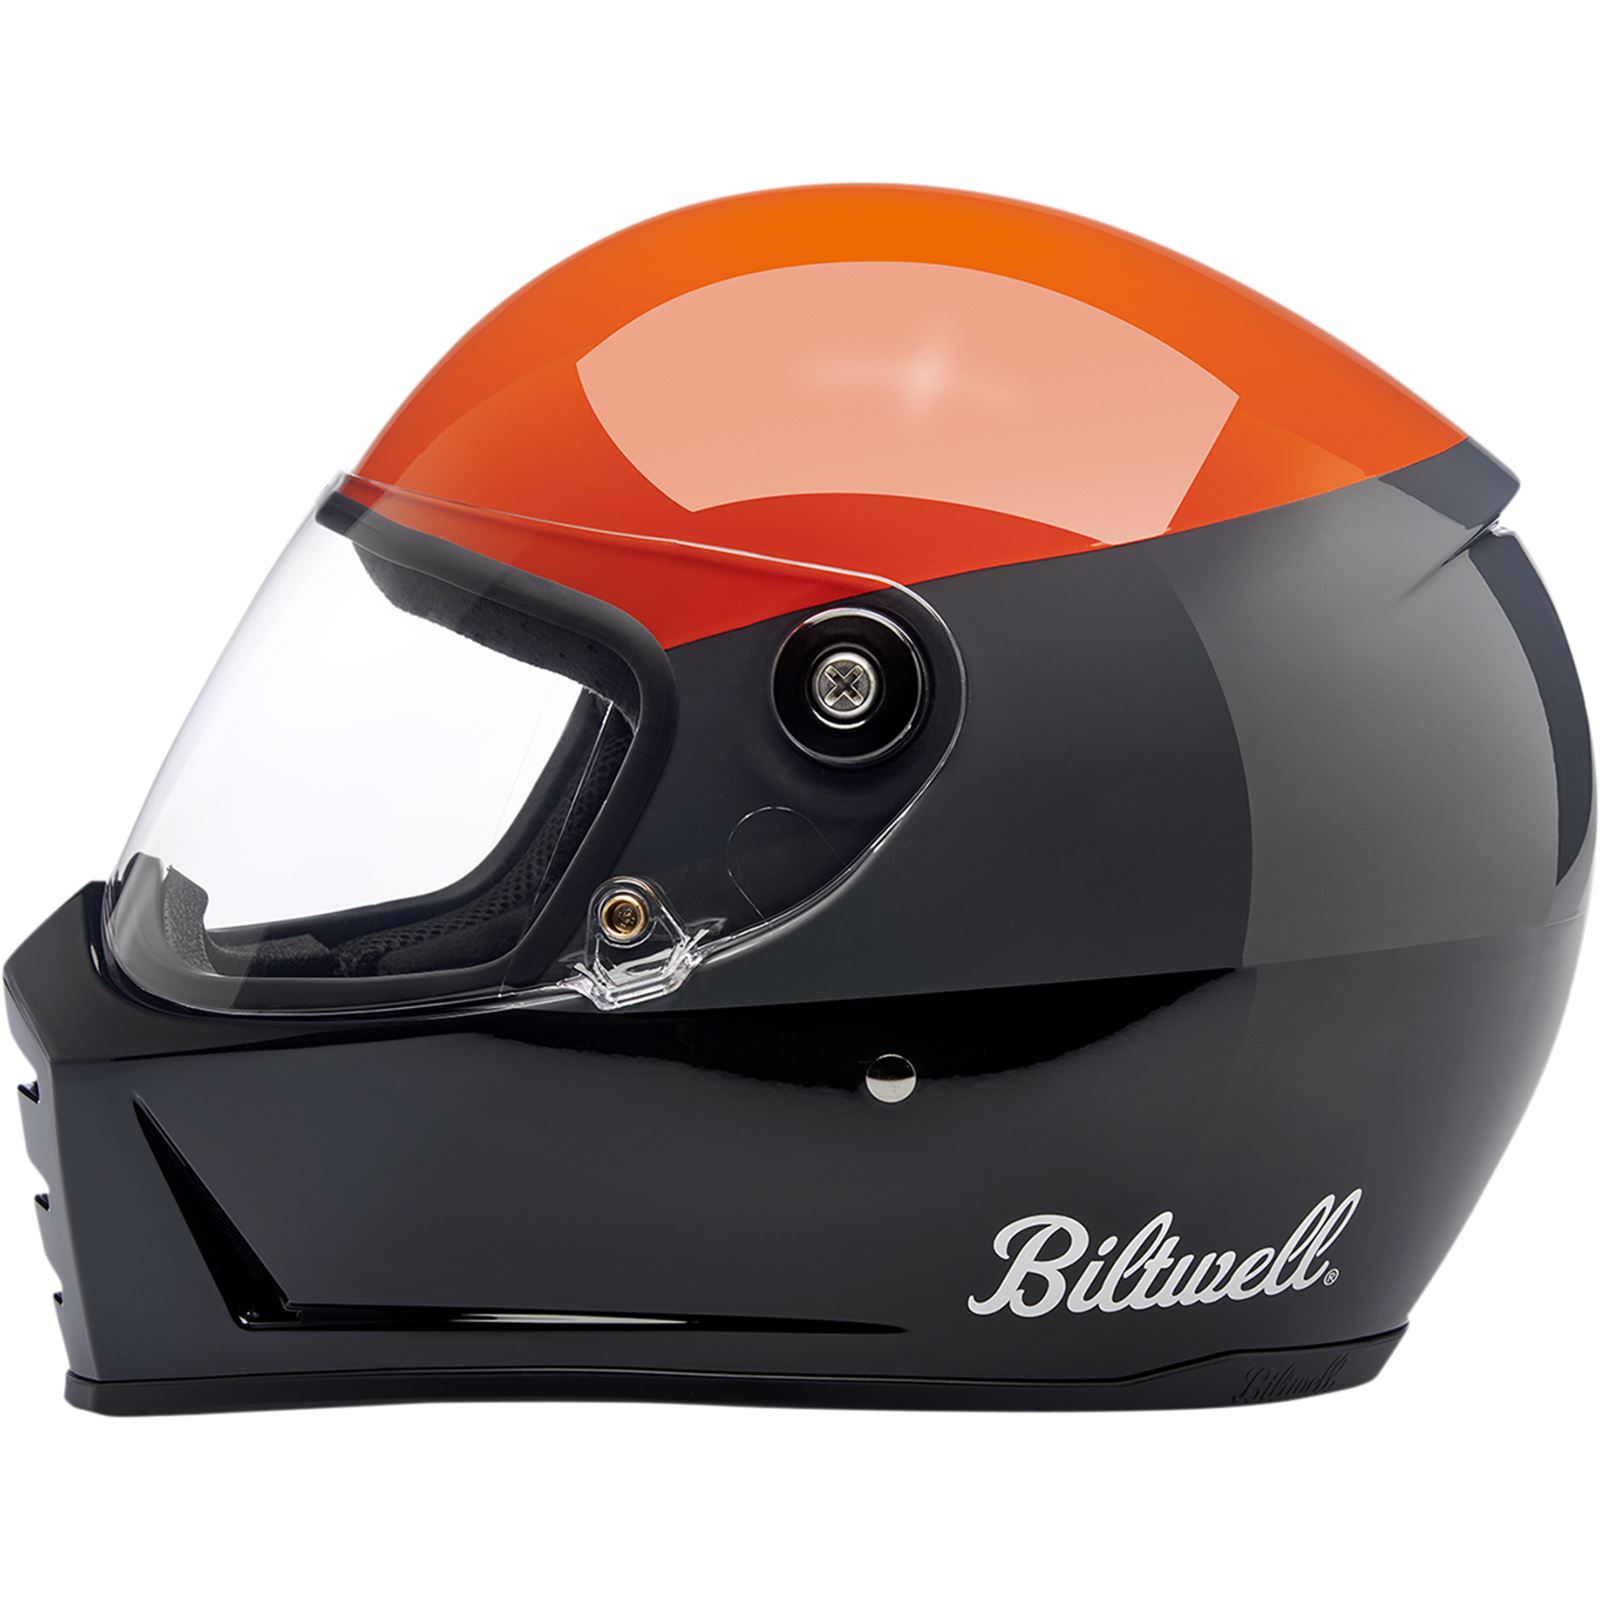 Biltwell Inc. Lane Splitter Helmet - Gloss Podium Orange/Gray